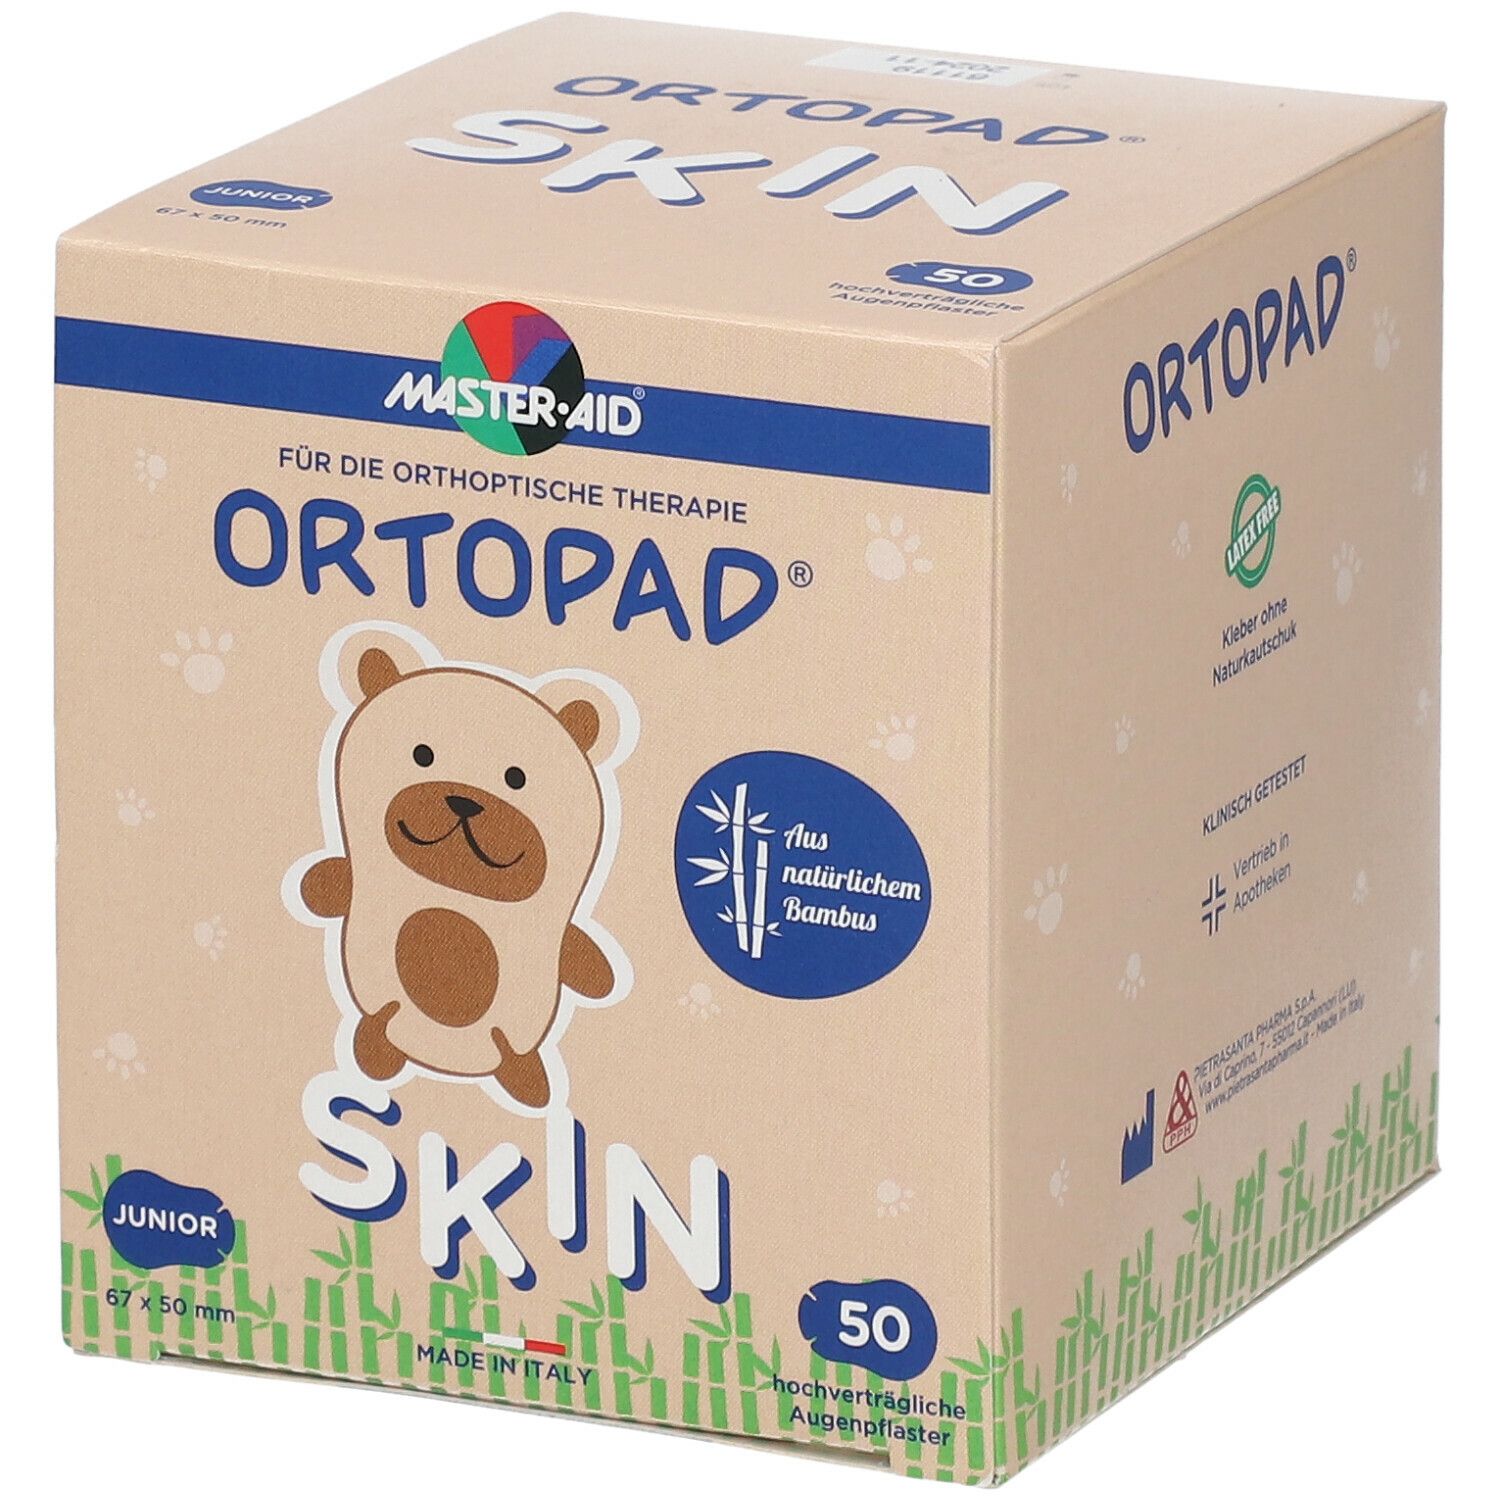 ORTOPAD® Skin Junior 67 x 50 mm